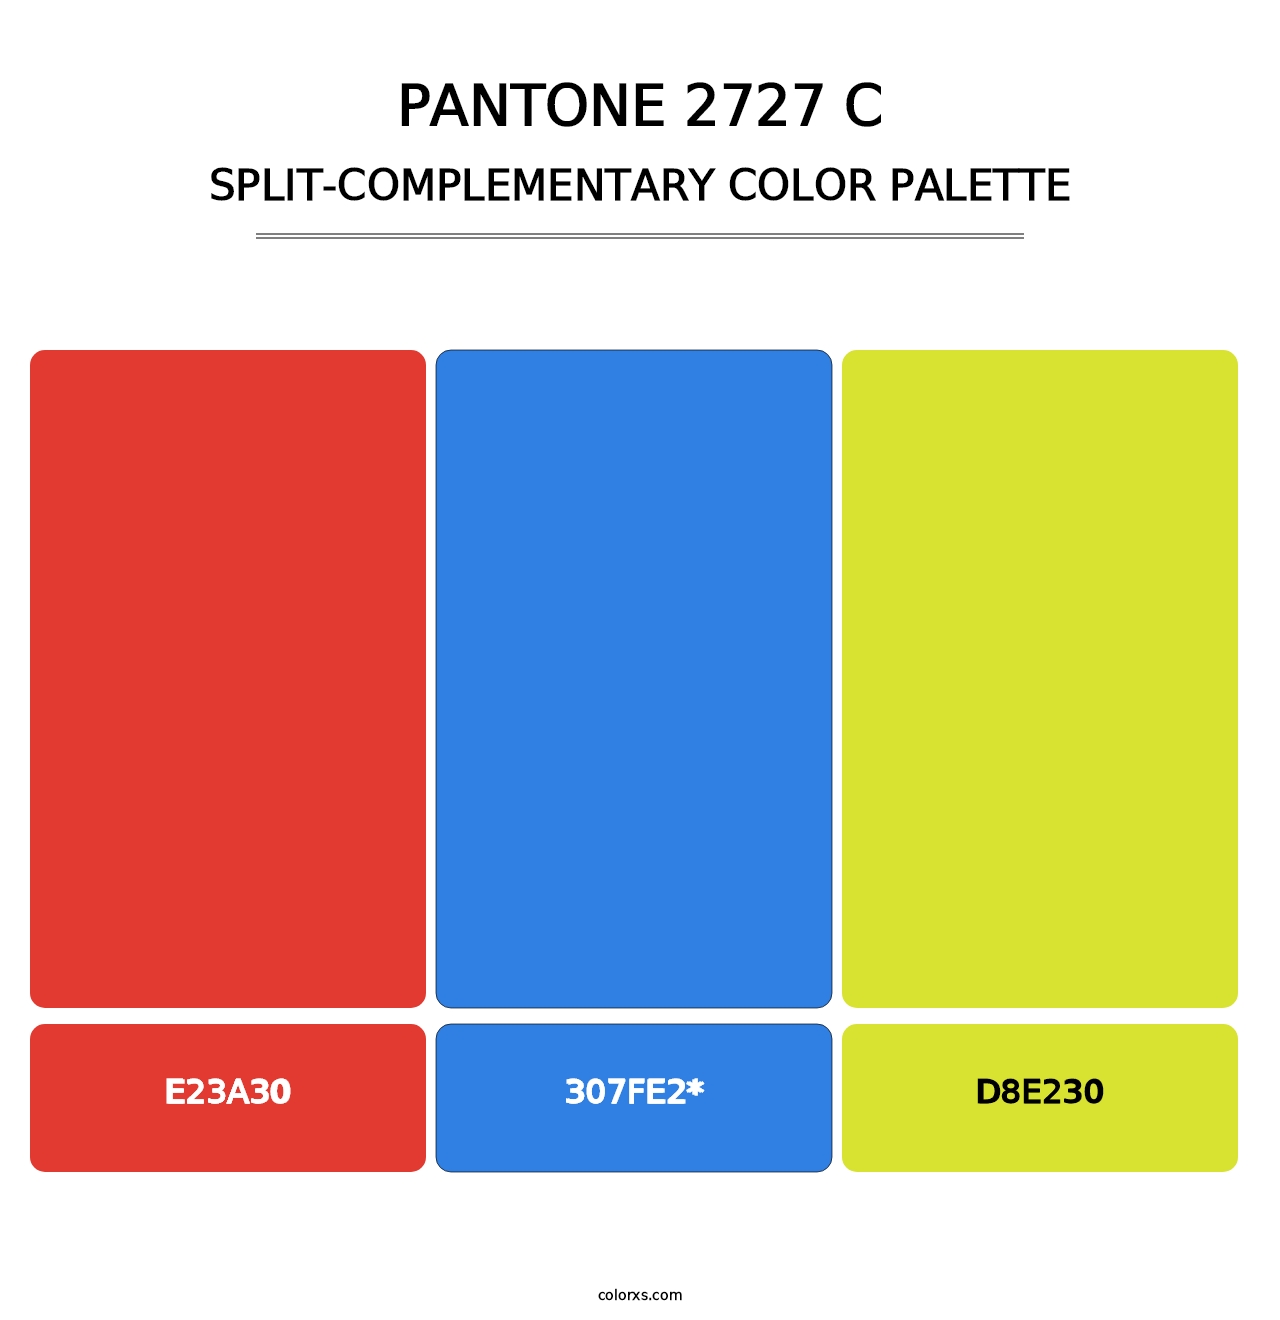 PANTONE 2727 C - Split-Complementary Color Palette